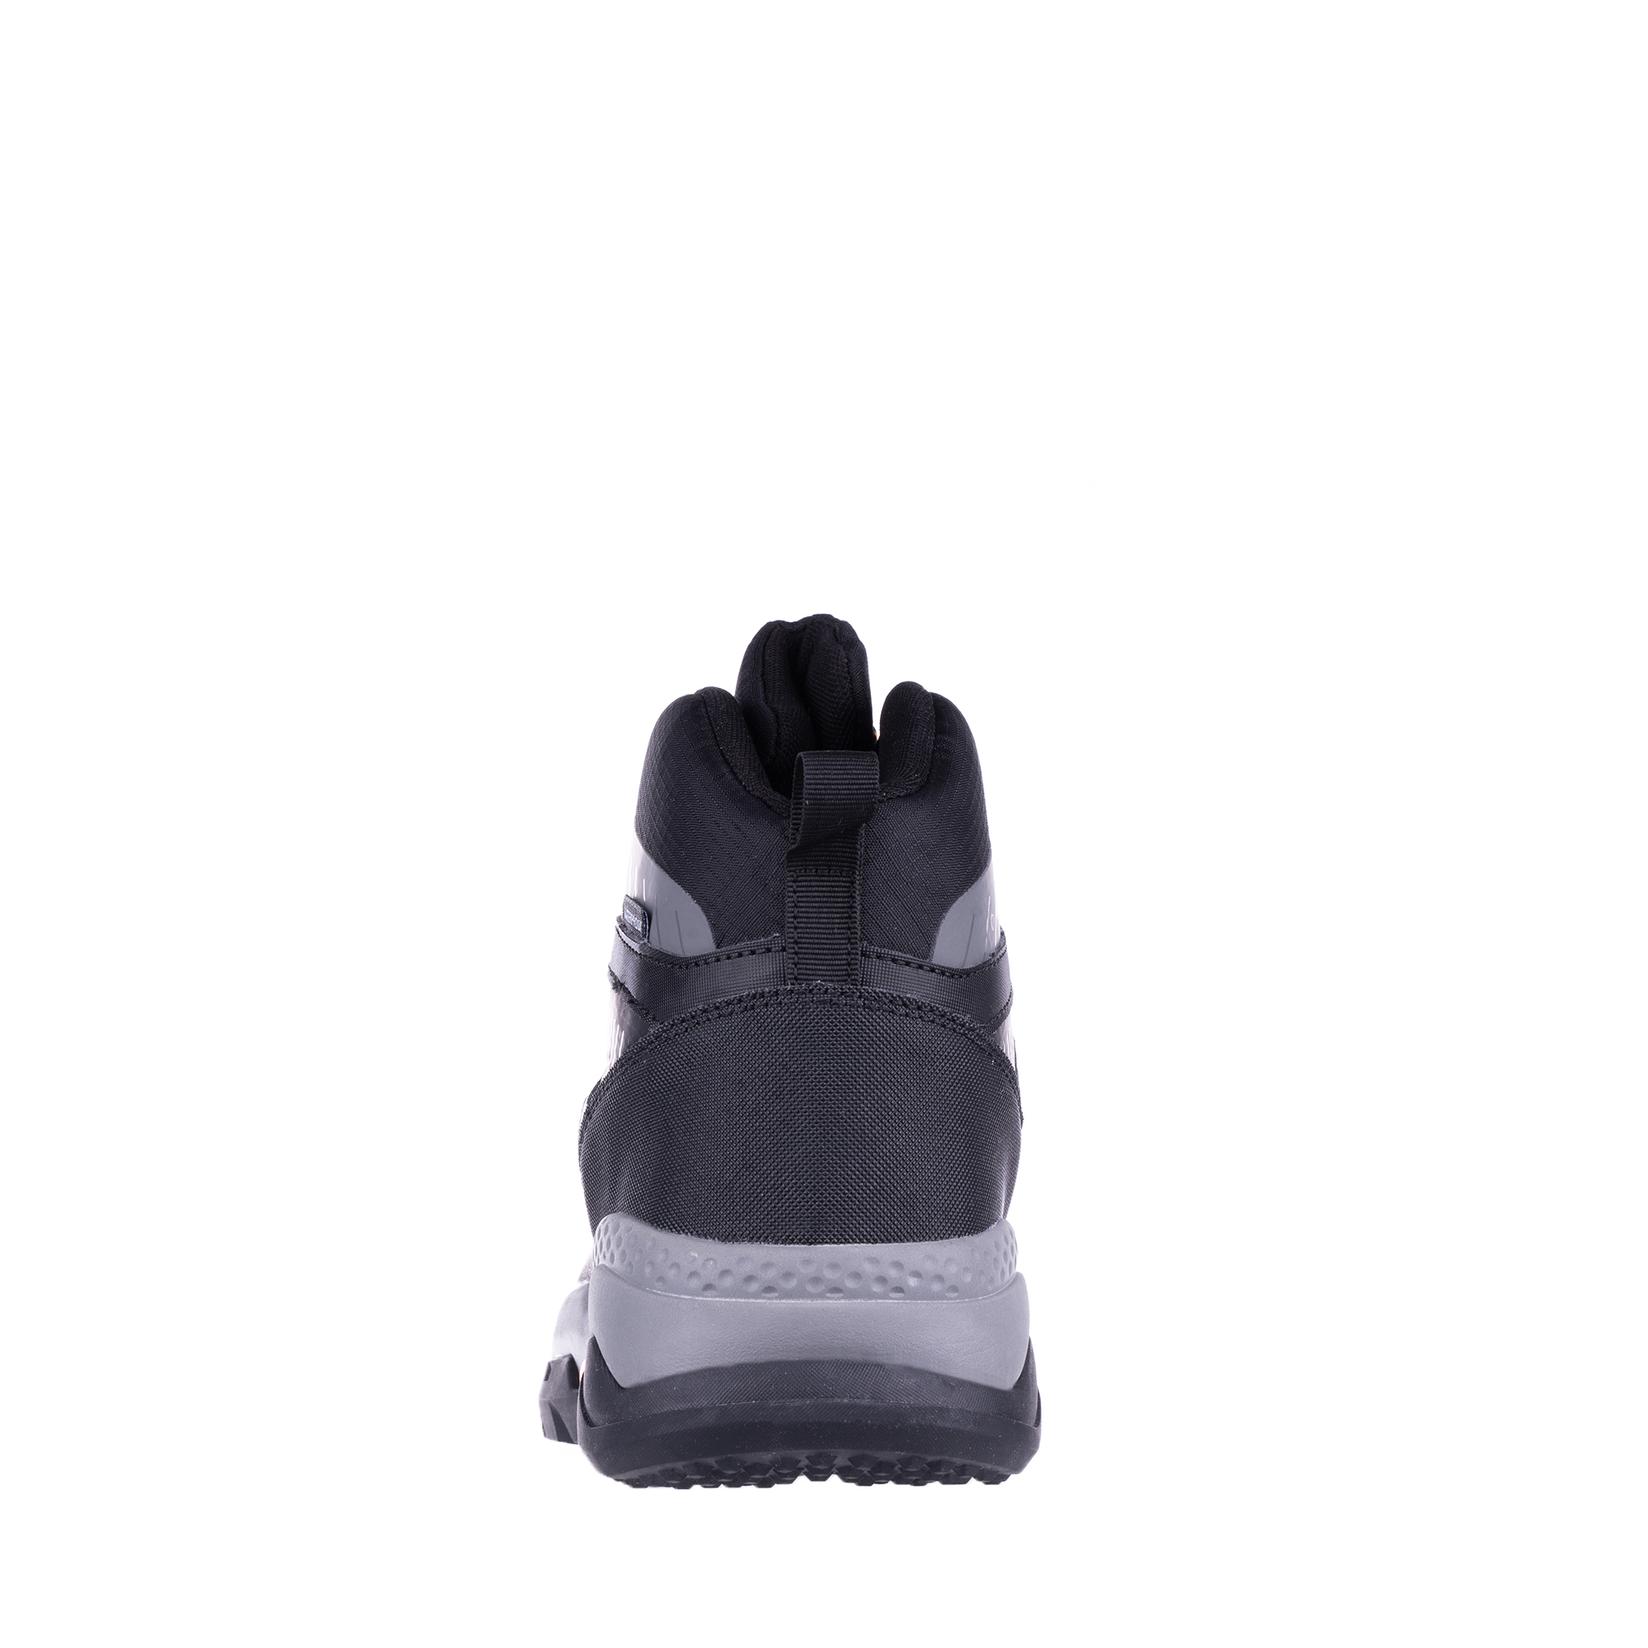 Selected image for DIFFERENTE WATERPROOF Muške cipele N75293, Crne